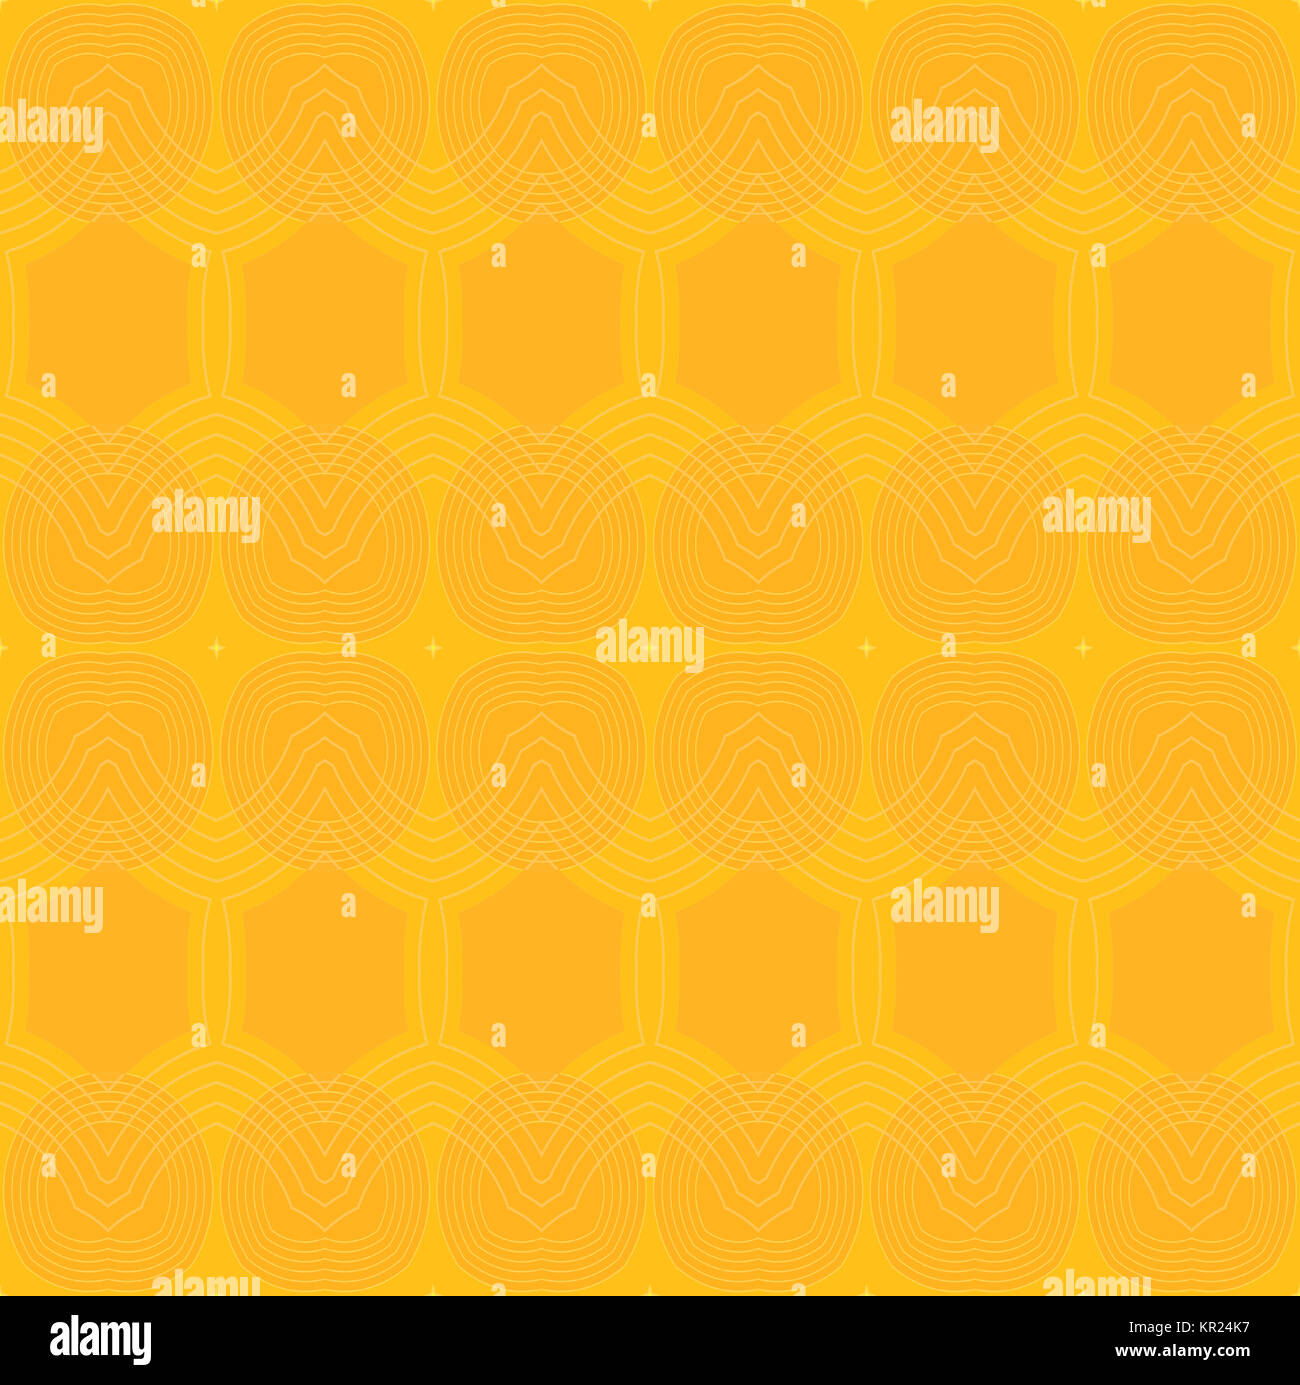 Abstrakte geometrische einfachen Hintergrund. Nahtlose Ellipsen und Sechskant Muster in hellem Gelb und Orange mit Konturen. Stockfoto